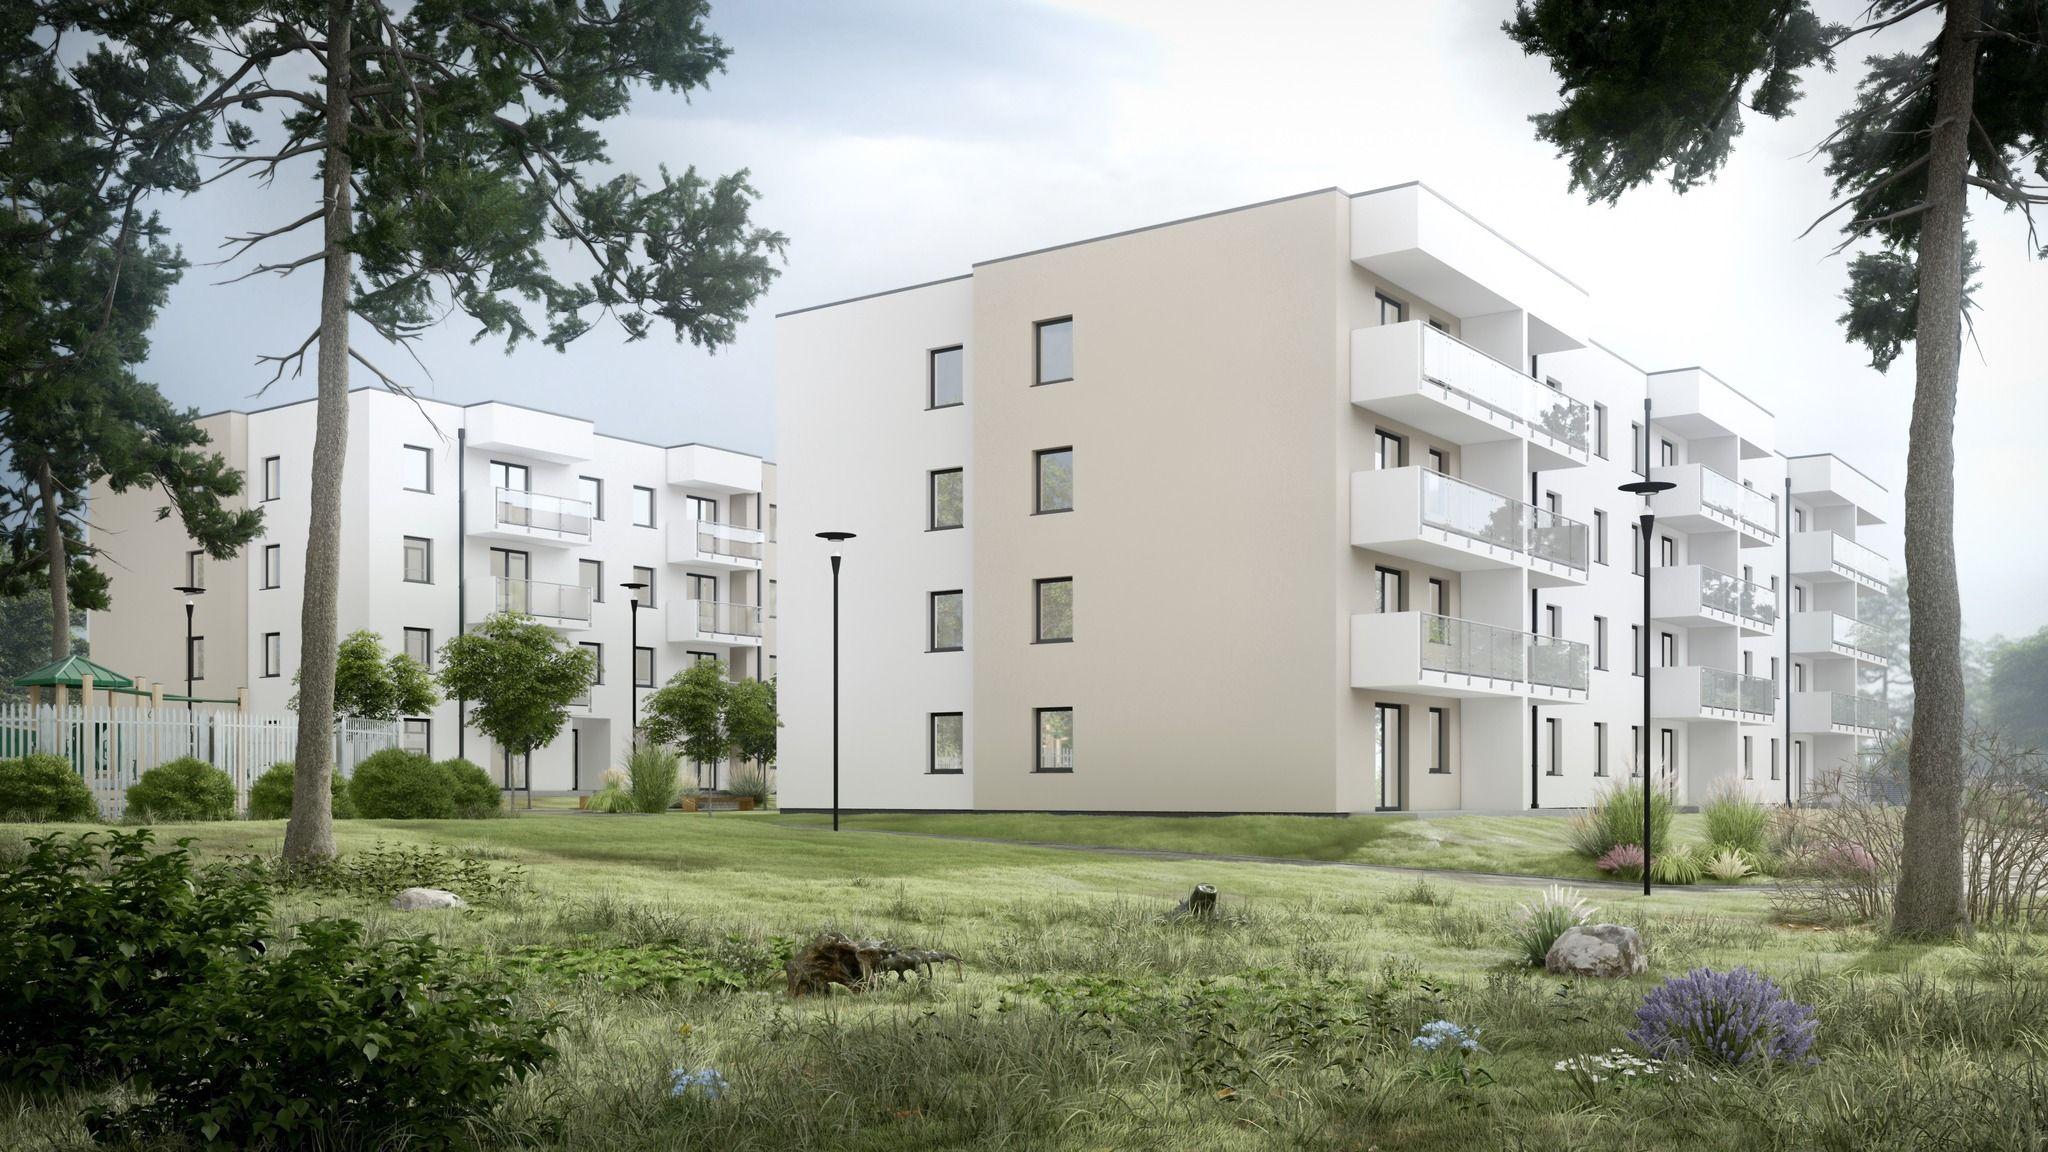 Zdj. nr. 1. Mieszkania czynszowe budowane w ramach Społecznej Inicjatywy Mieszkaniowej  „KZN – Toruński ” - wizualizacja inwestycji